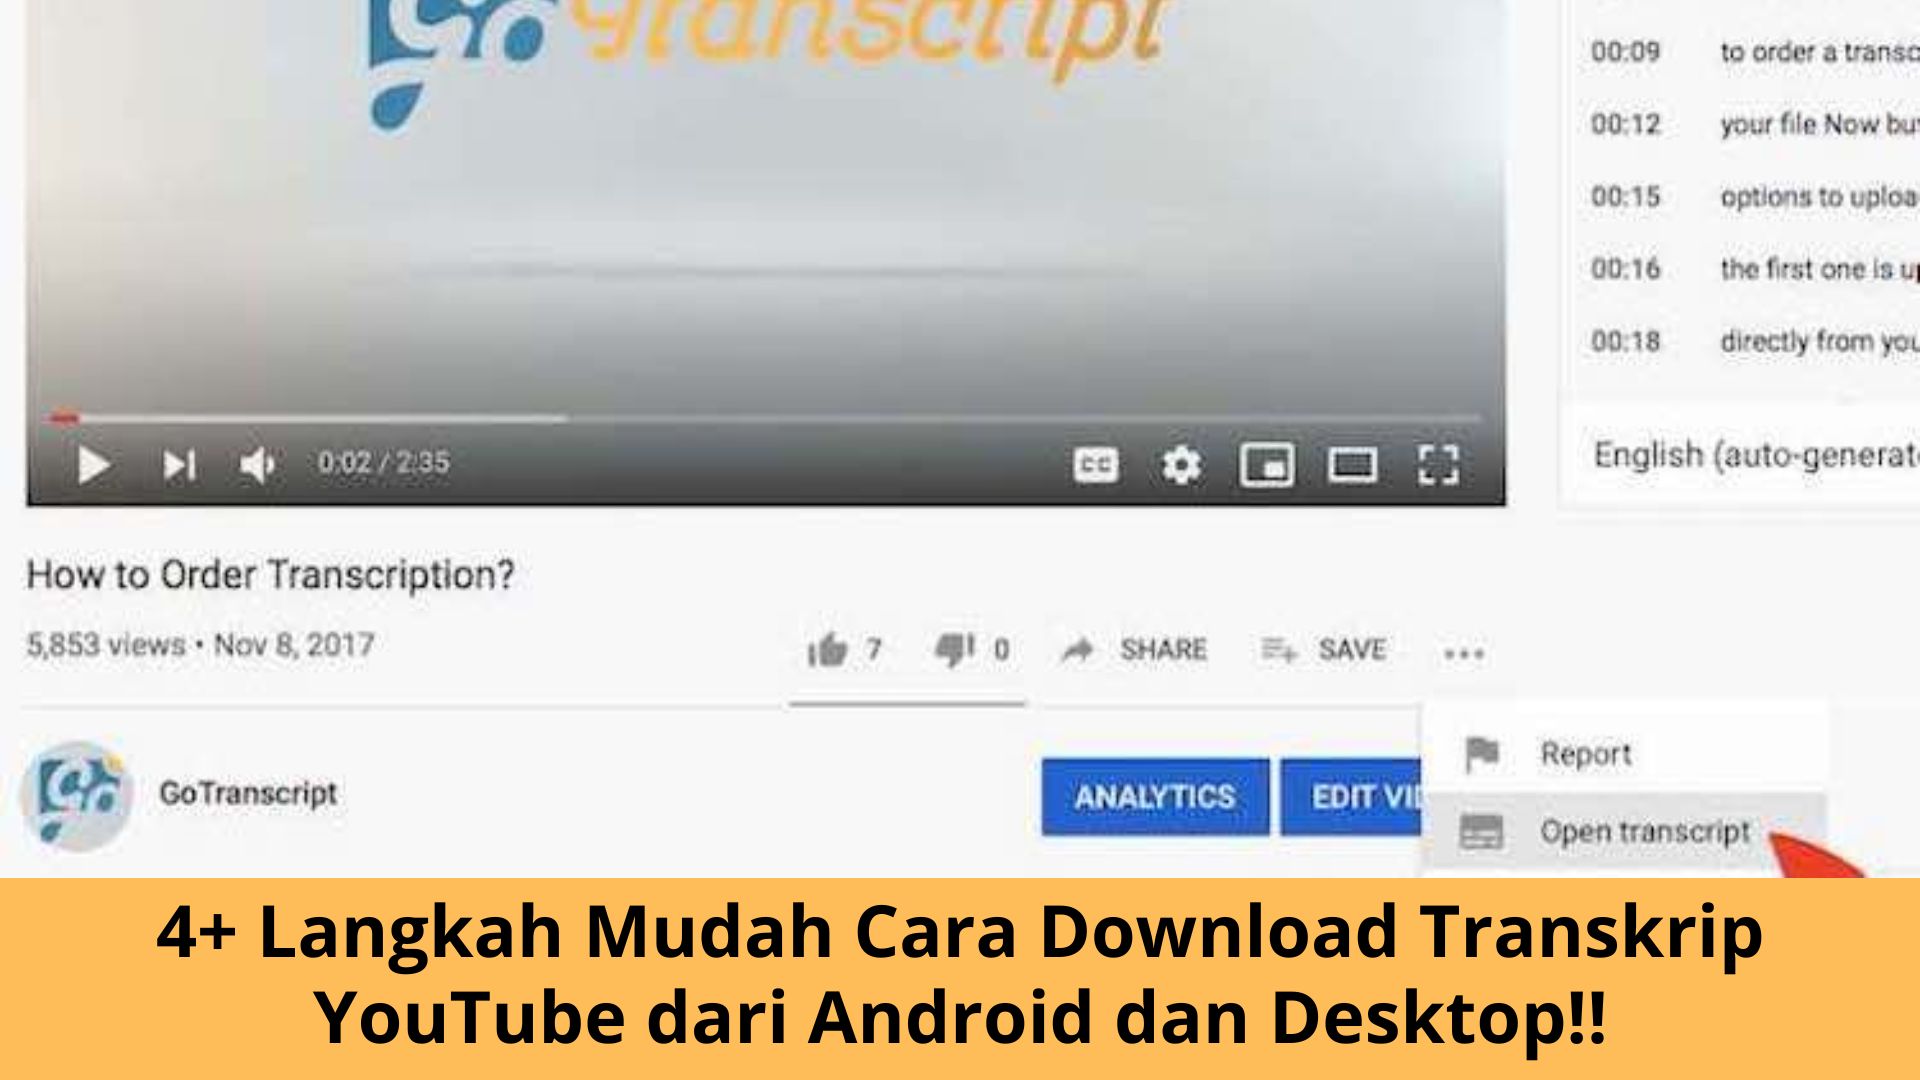 Cara Download Transkrip YouTube